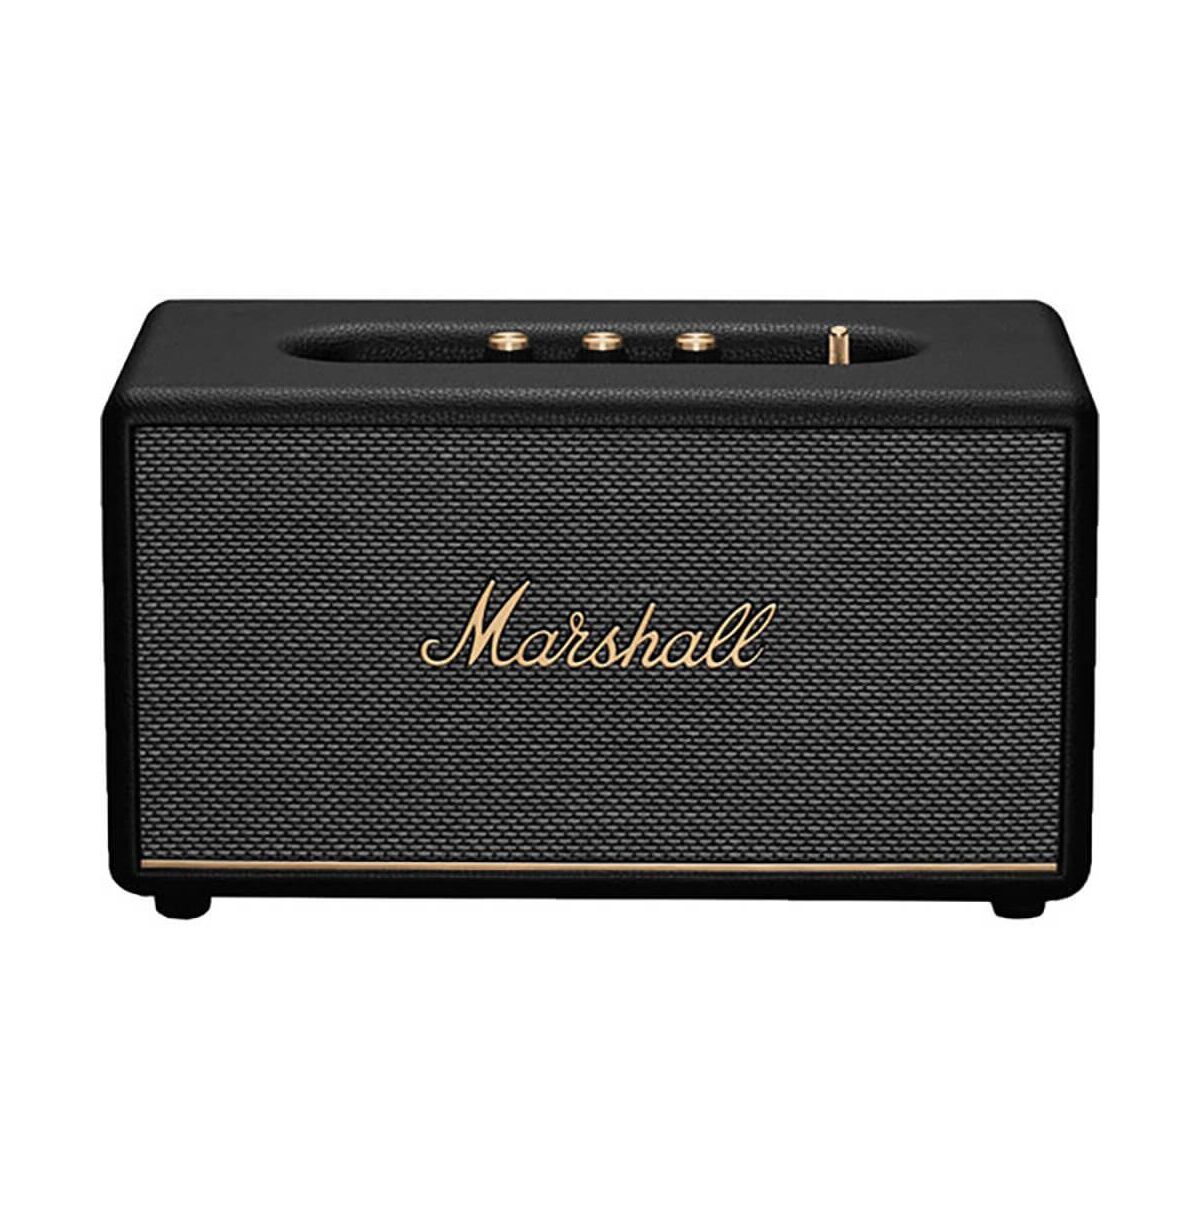 Marshall Stanmore Iii Black Bluetooth Speaker System - Black